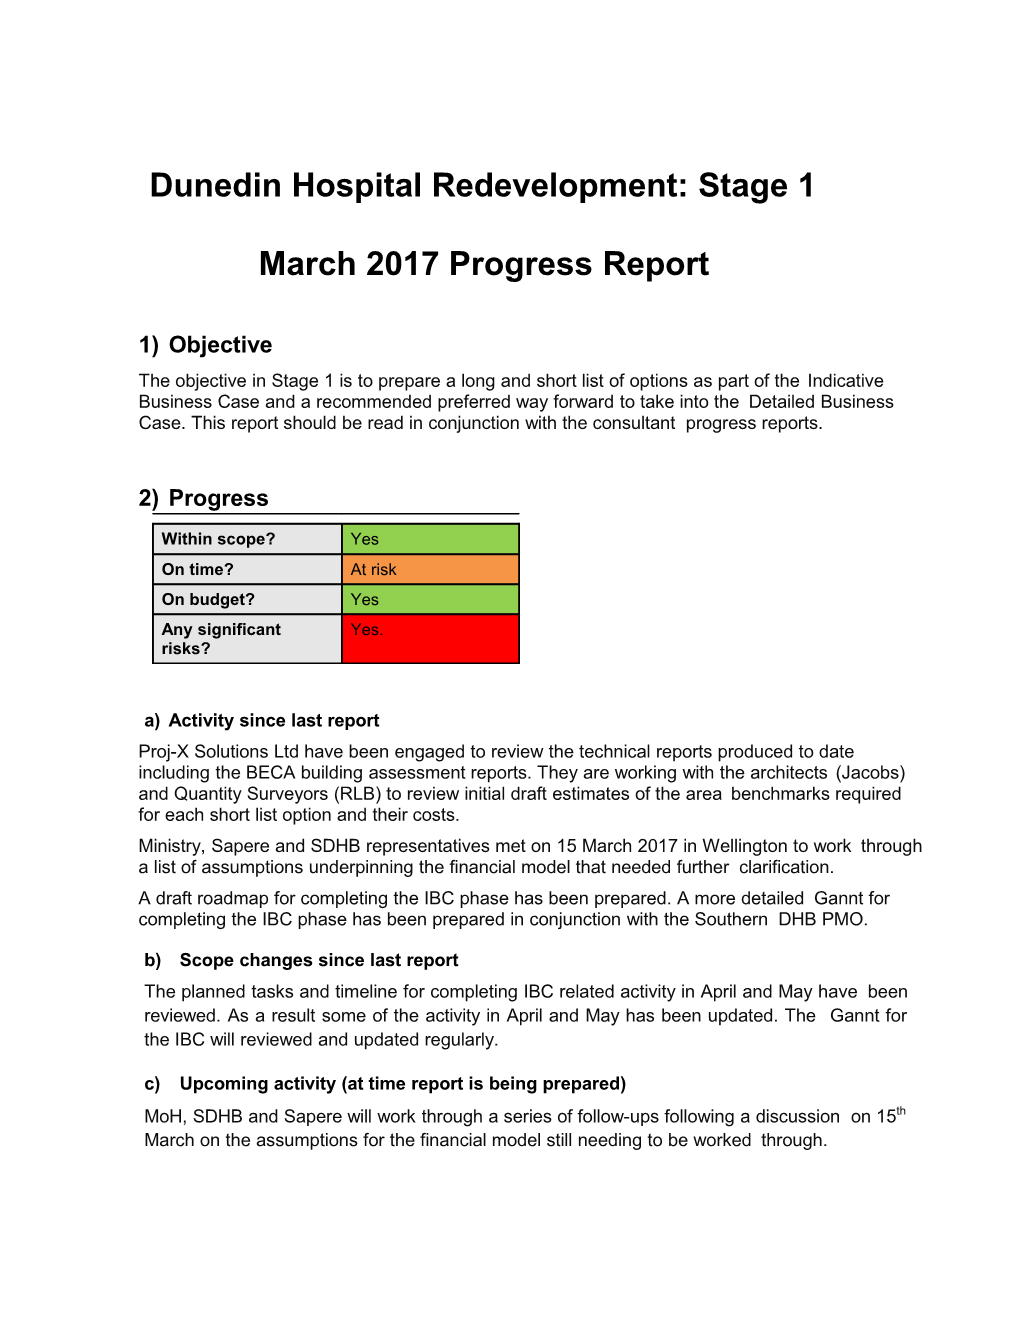 Dunedinhospital Redevelopment:Stage 1